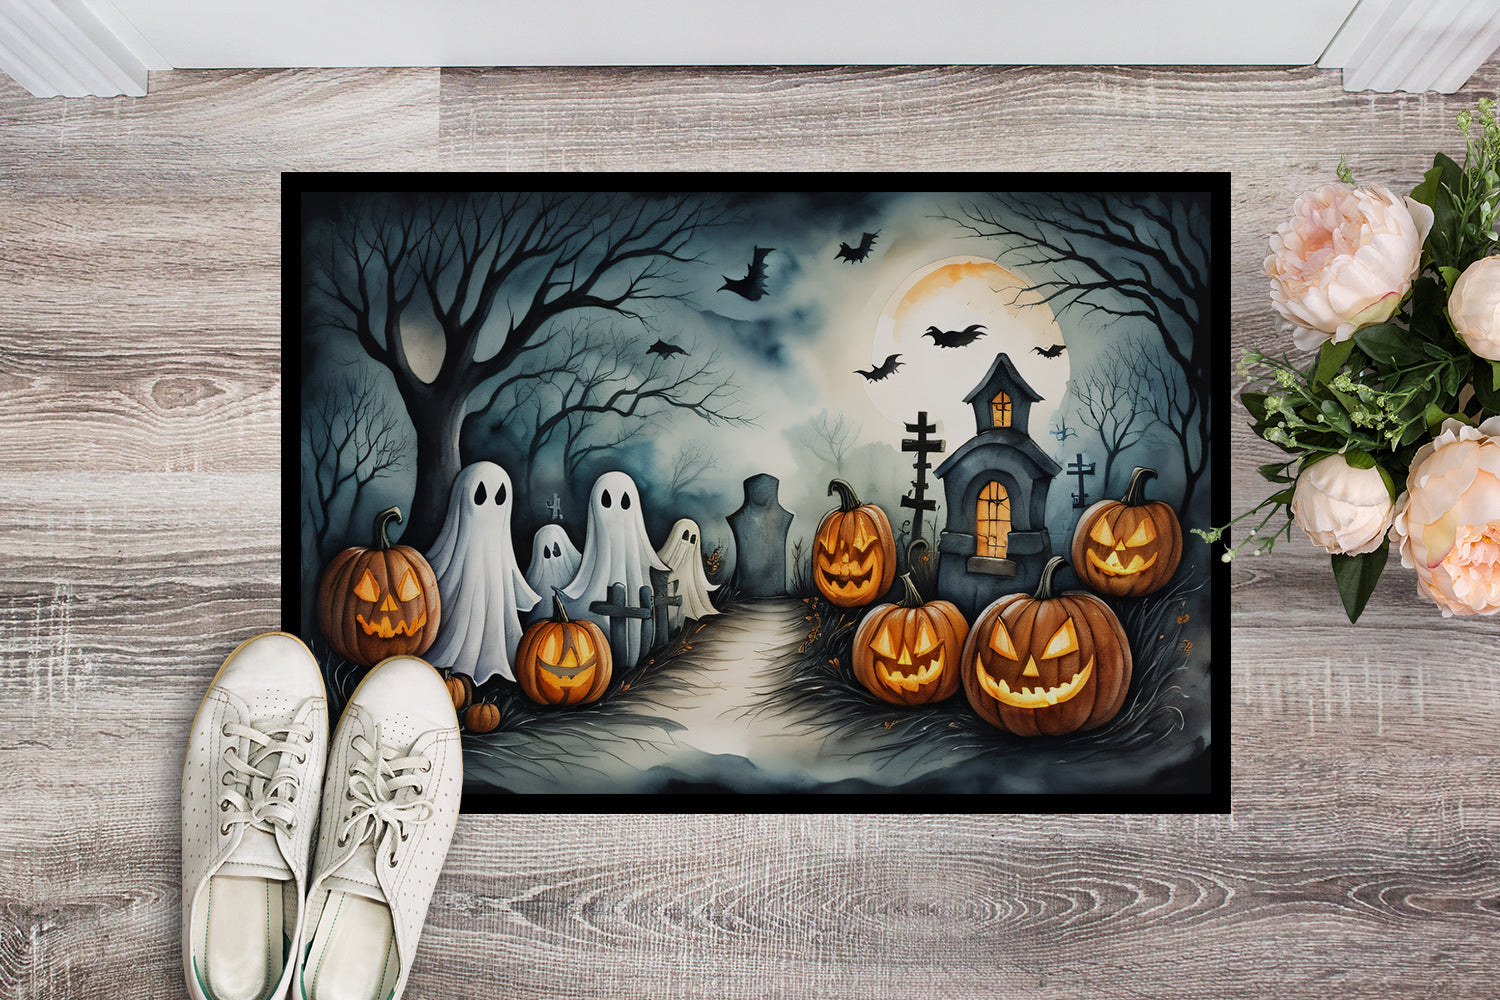 Buy this Ghosts Spooky Halloween Doormat 18x27